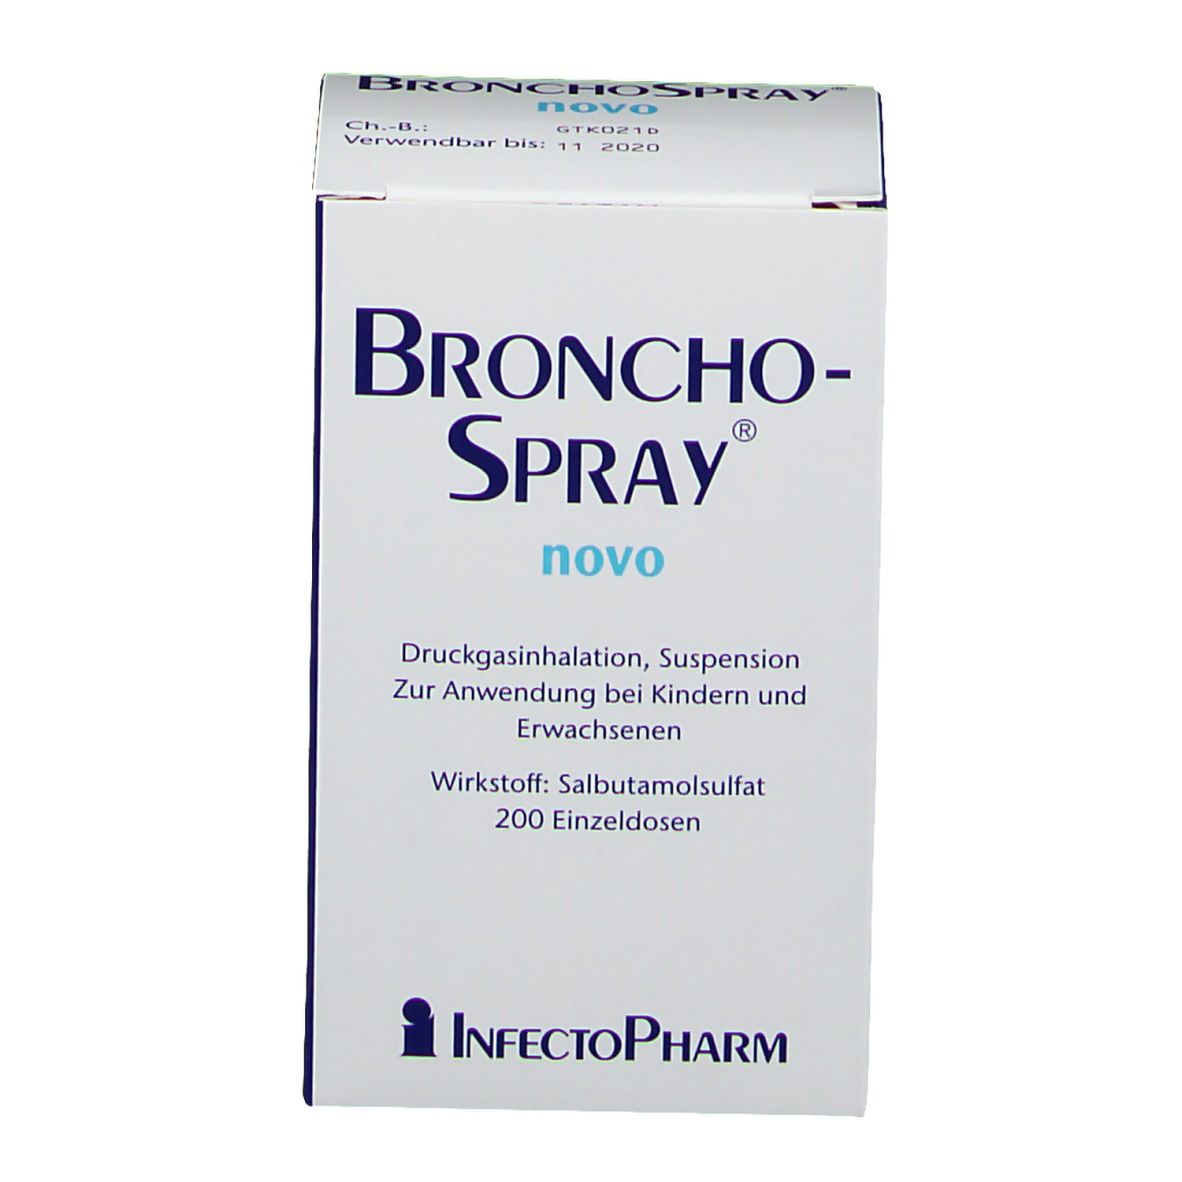 Bronchospray® novo